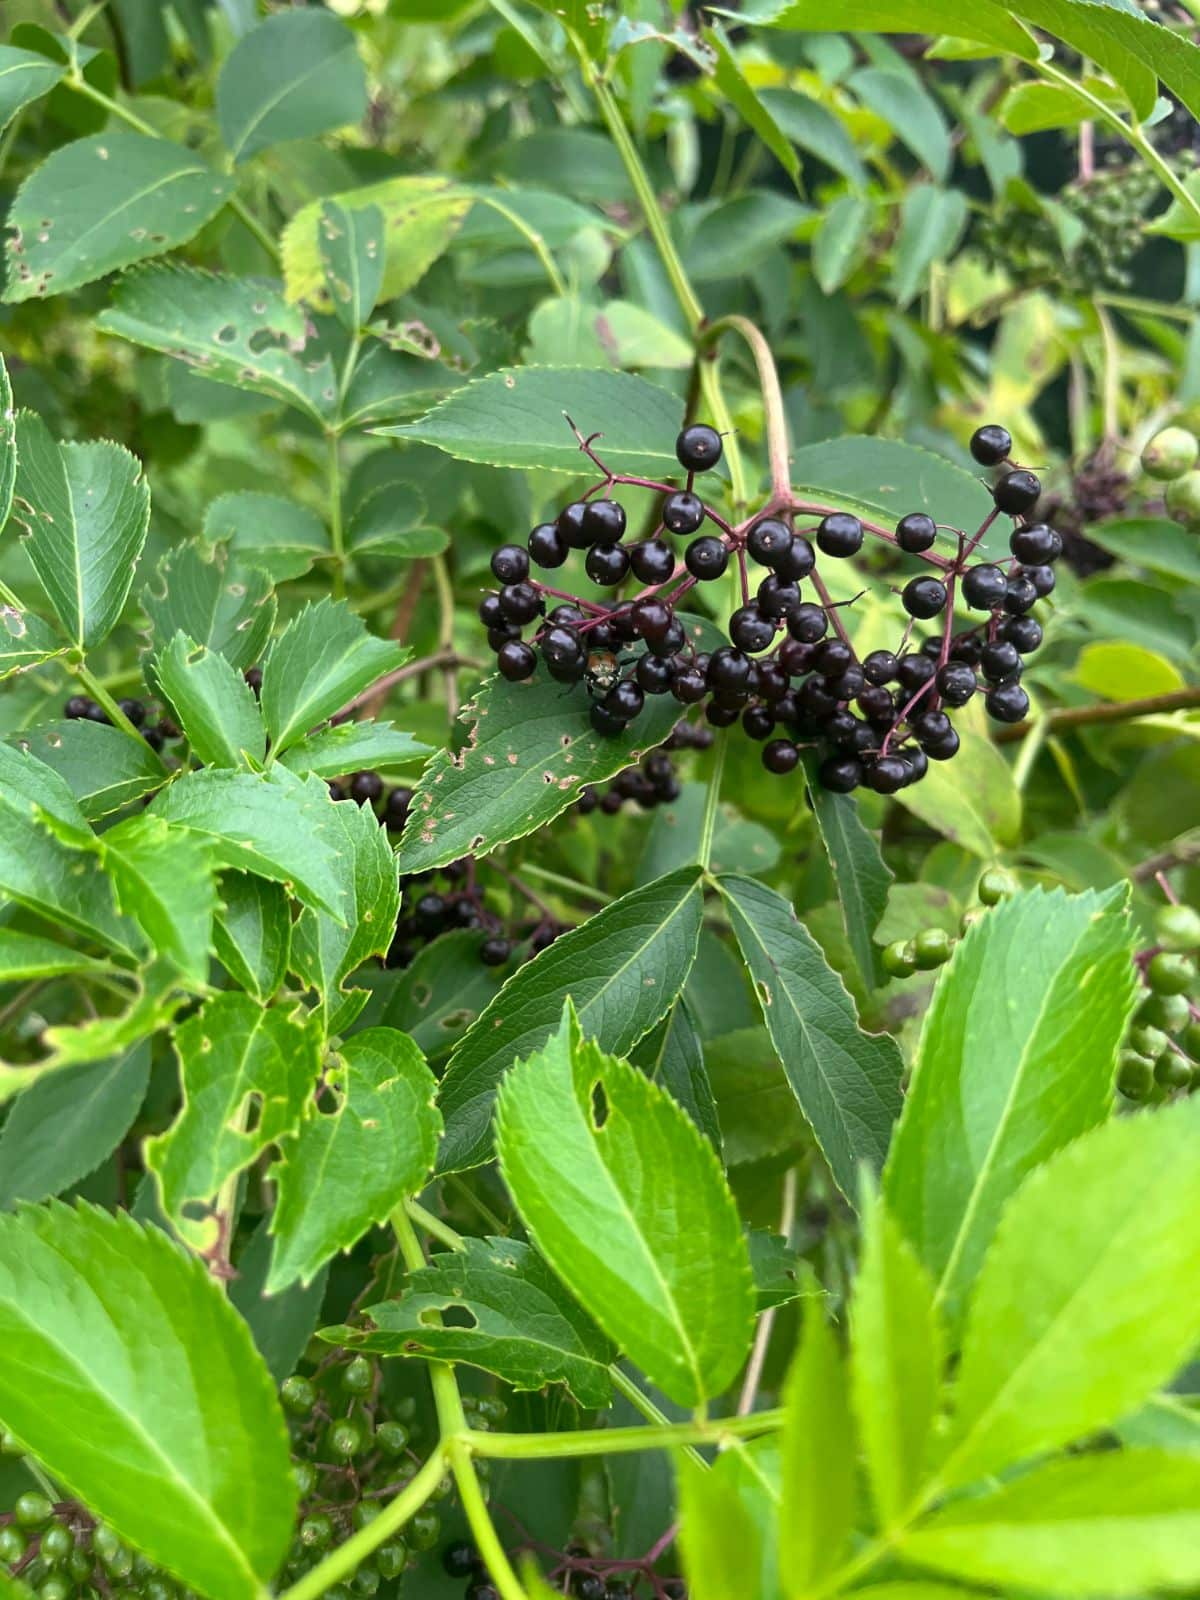 A cluster of nice, ripe, heavy elderberries